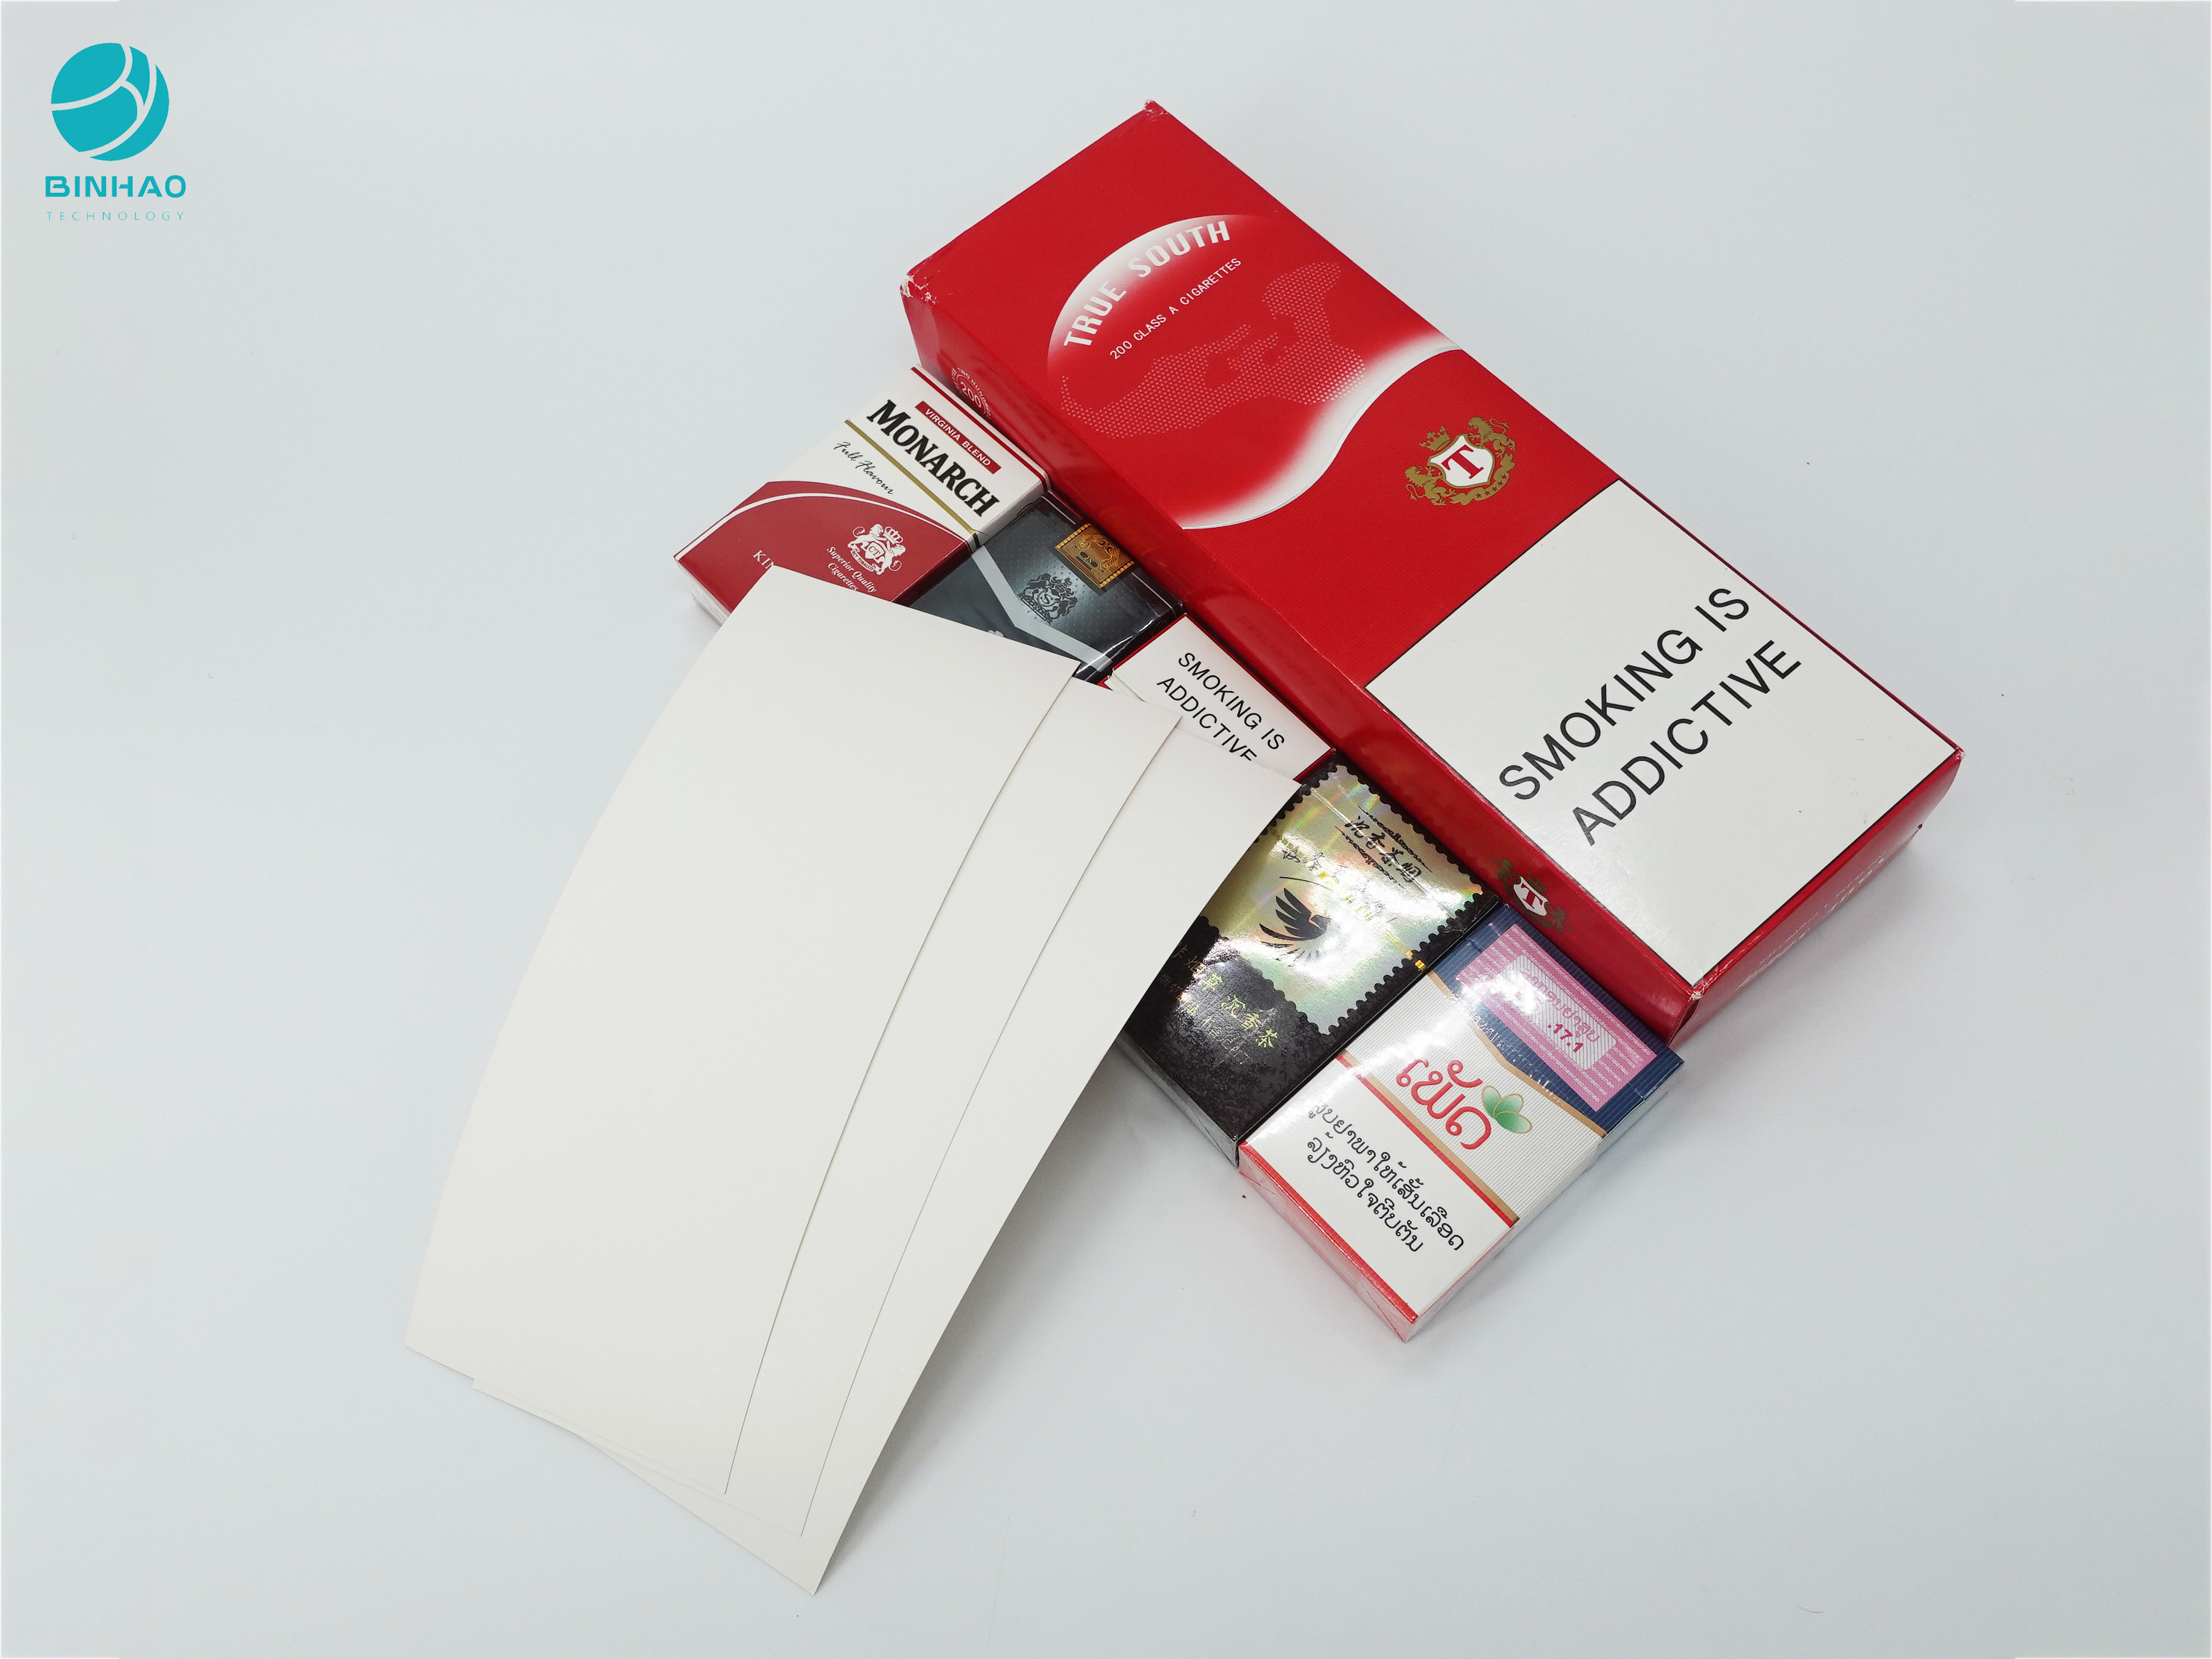 กล่องกระดาษแข็งออกแบบส่วนบุคคลสำหรับแพ็คเกจยาสูบบุหรี่ครบชุด